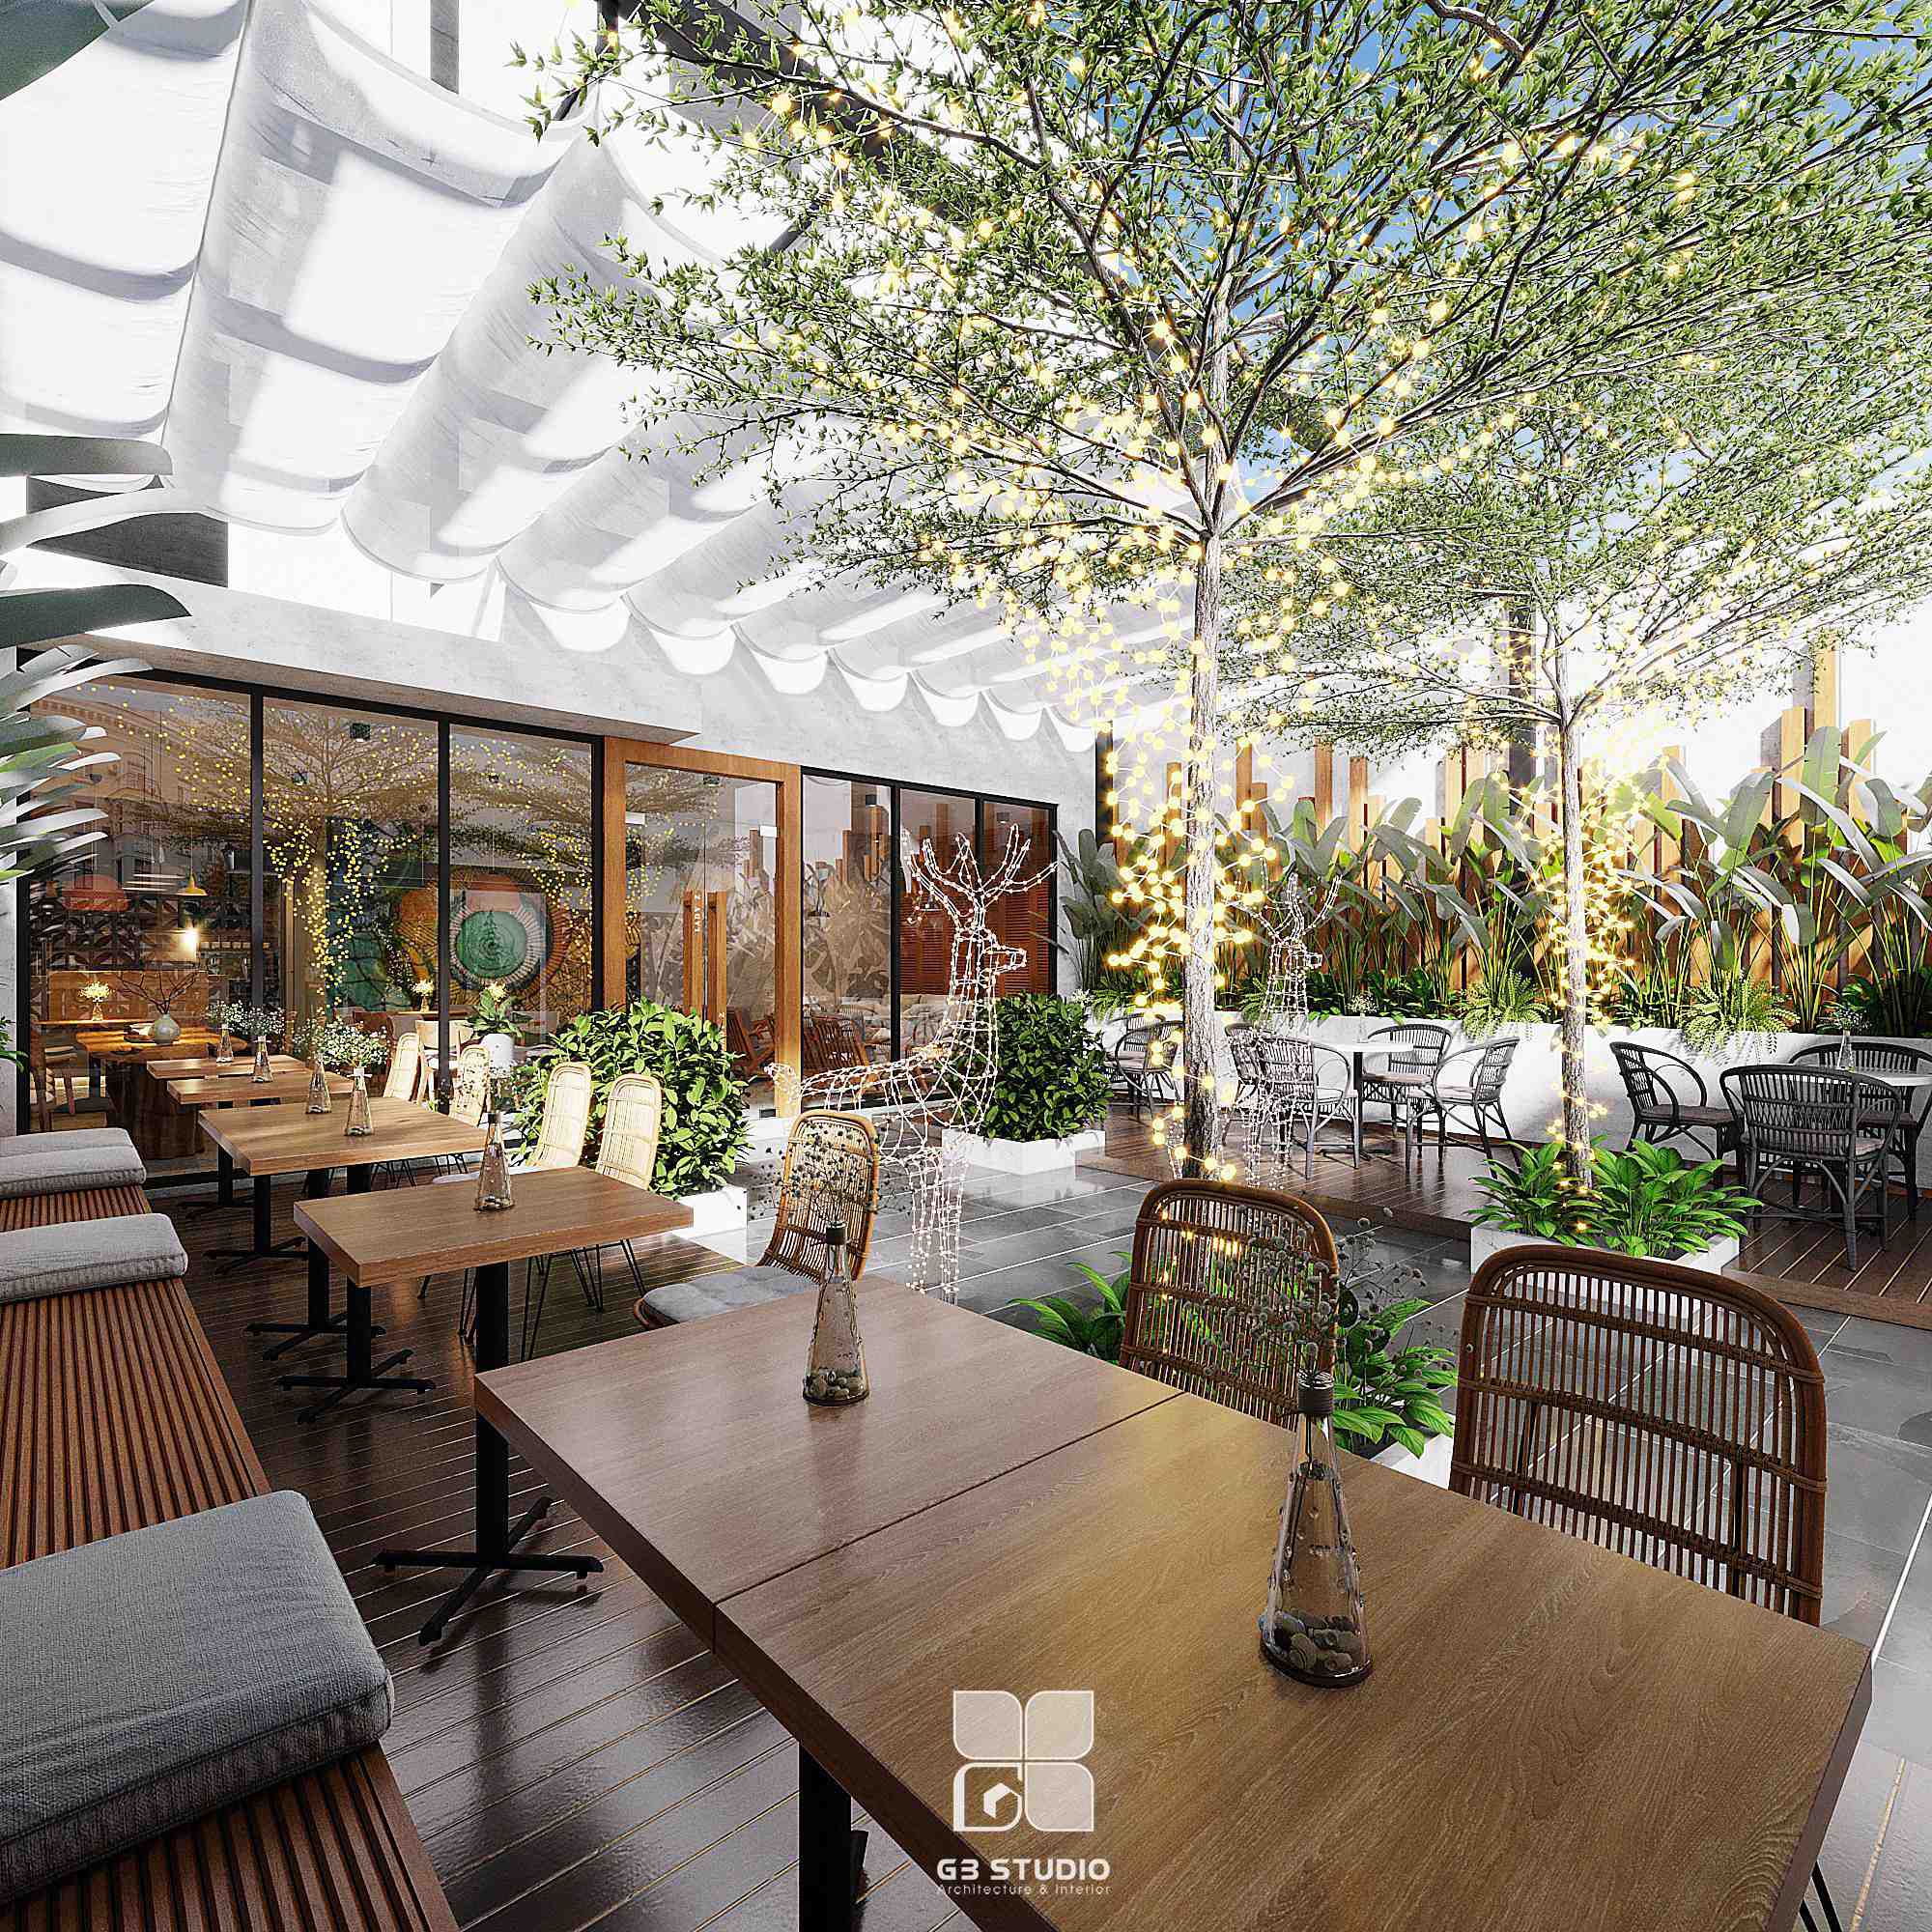 Thiết kế nội thất Cafe tại Thái Nguyên Cafe Góc Xóm 1596099640 2